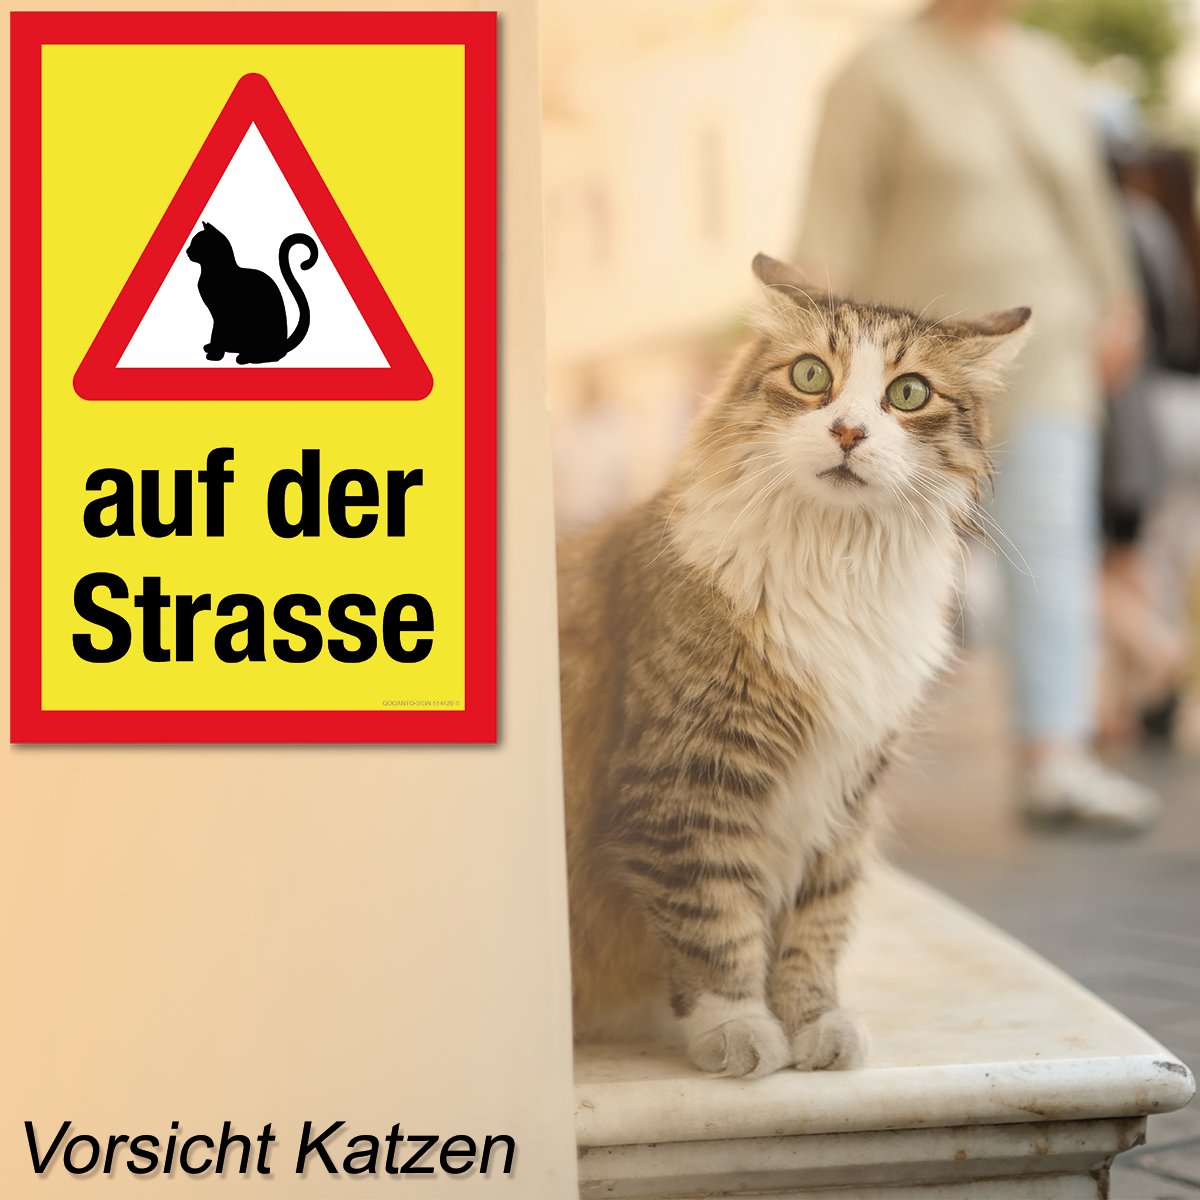 Achtung Katzen Schild oder Aufkleber, Warndreieck Mit Katze - Auf Der Strasse, aus Alu-Verbund oder Selbstklebefolie mit UV-Schutz - QOOANTO-SIGN